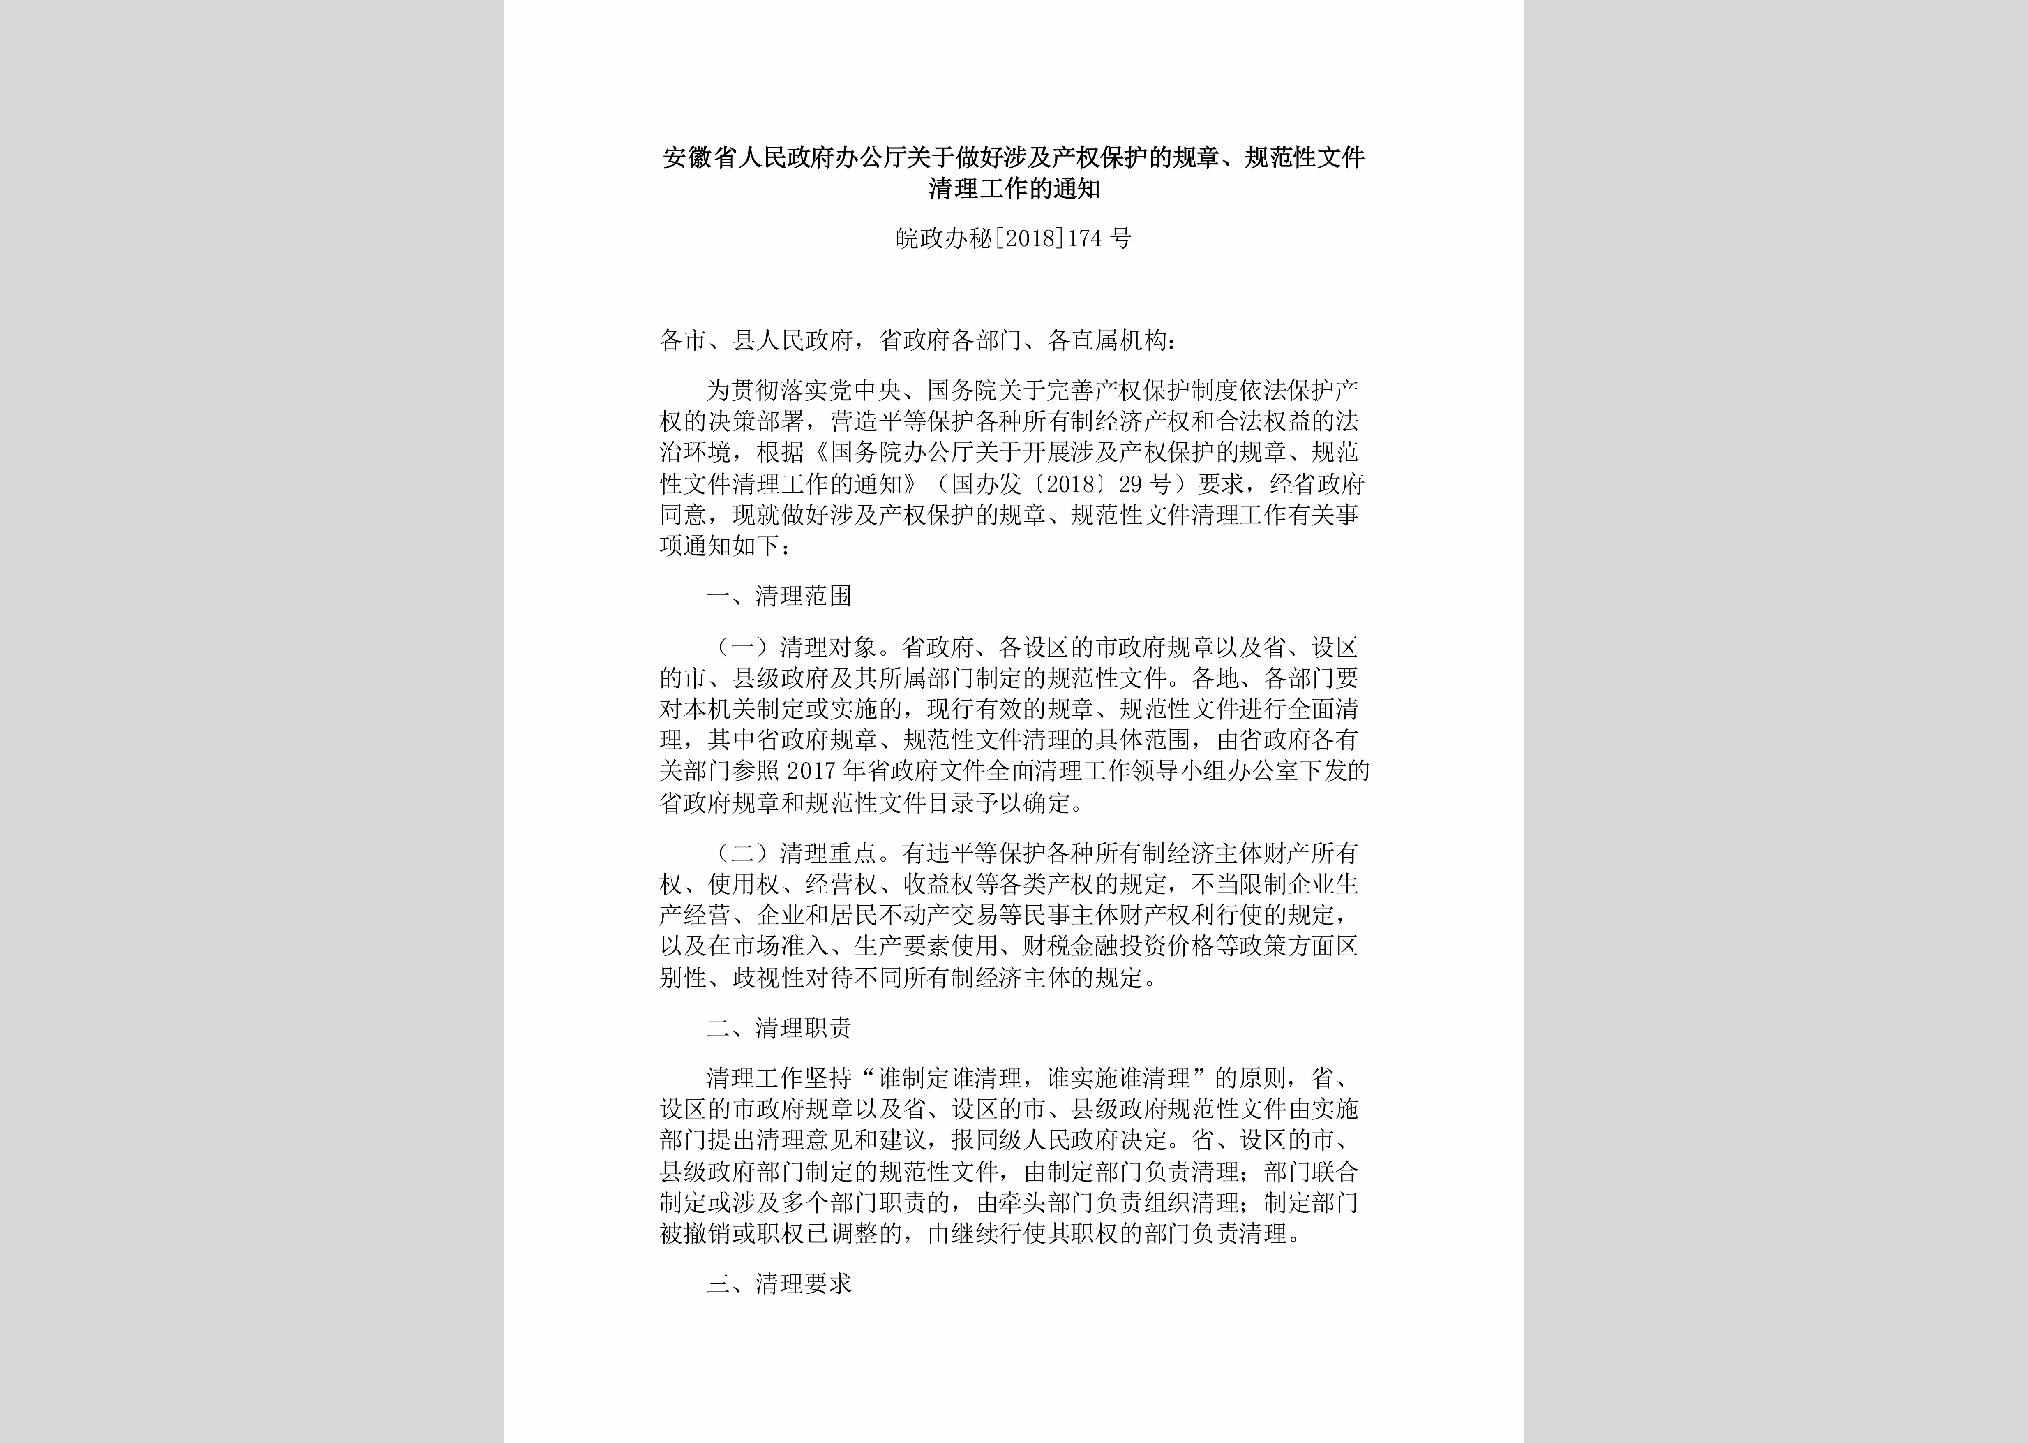 皖政办秘[2018]174号：安徽省人民政府办公厅关于做好涉及产权保护的规章、规范性文件清理工作的通知